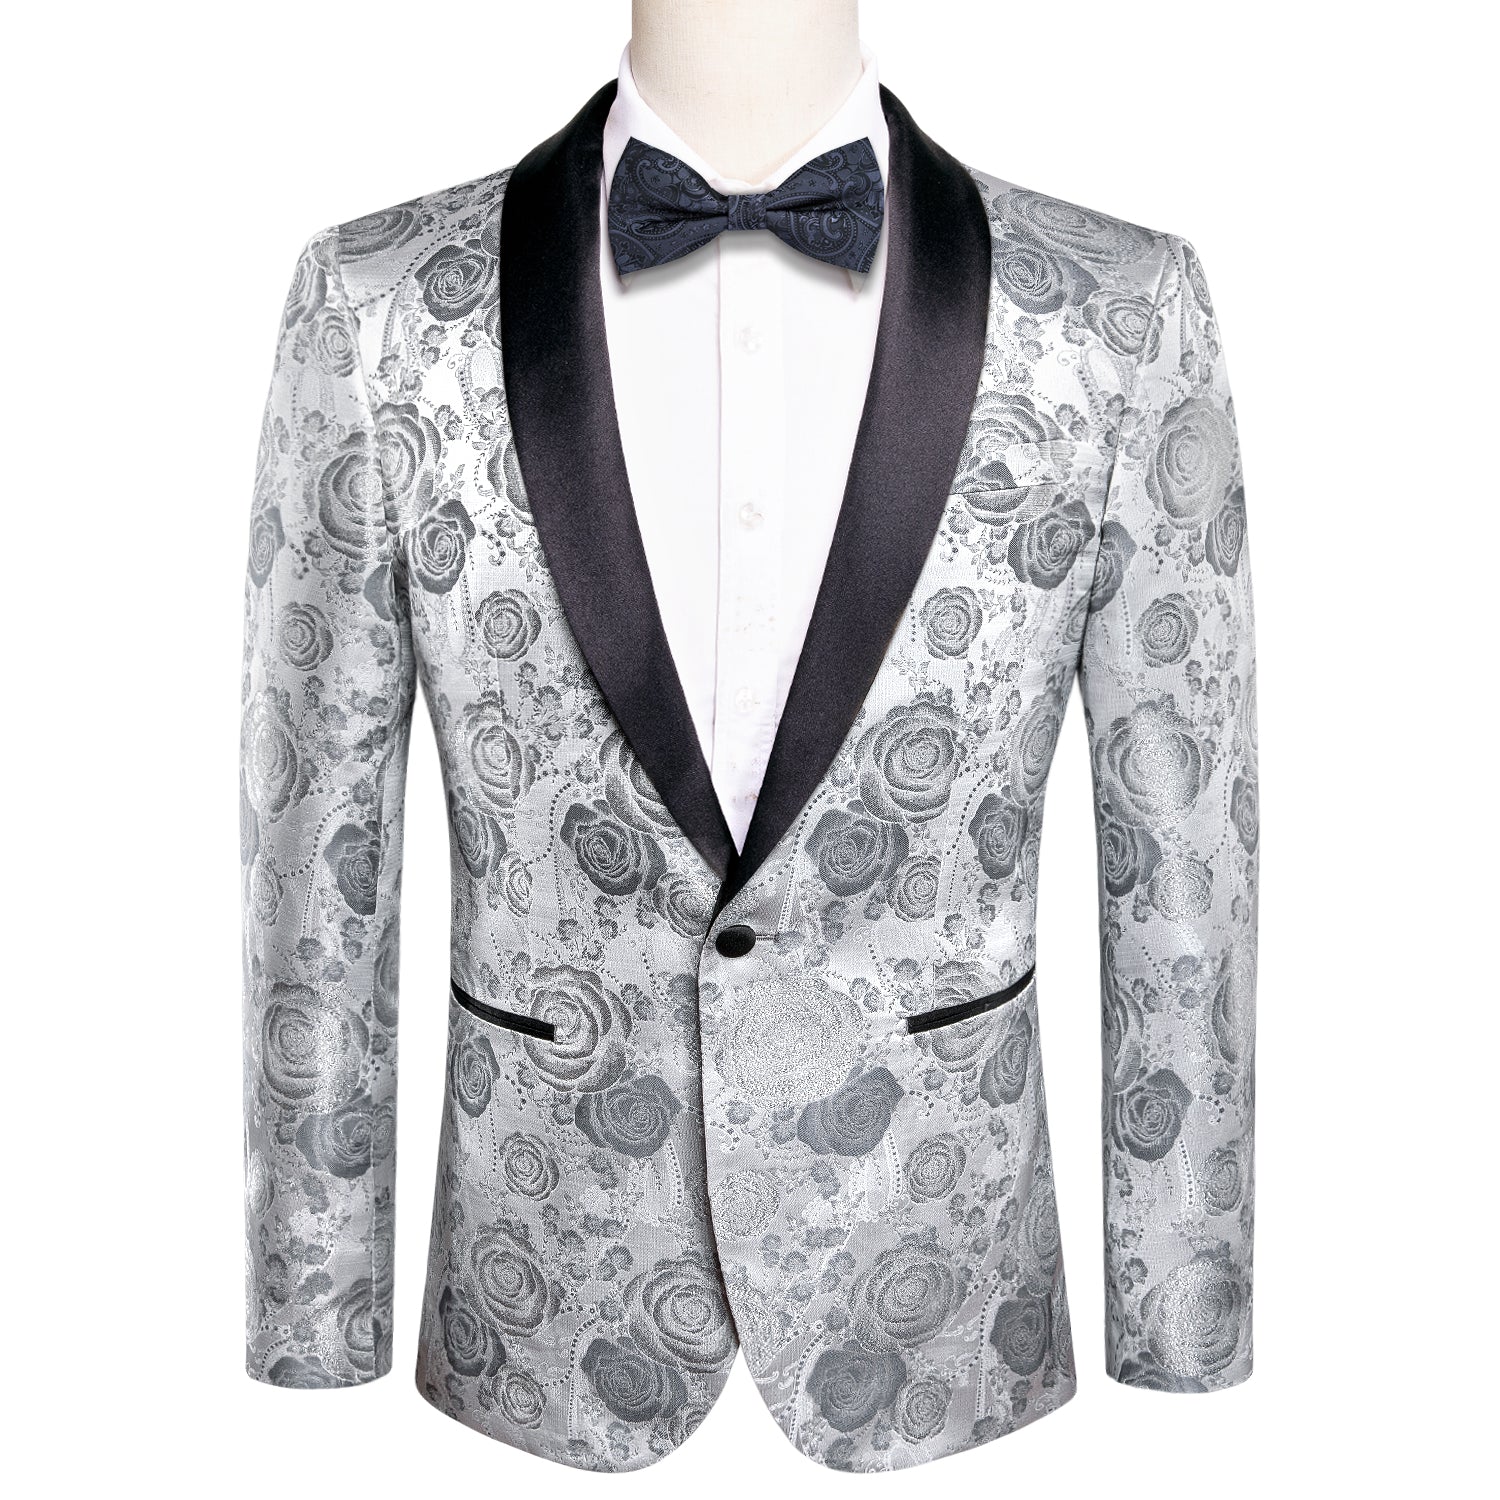 Wedding Blazer Sliver Grey Roses White Floral Men's Suit Set